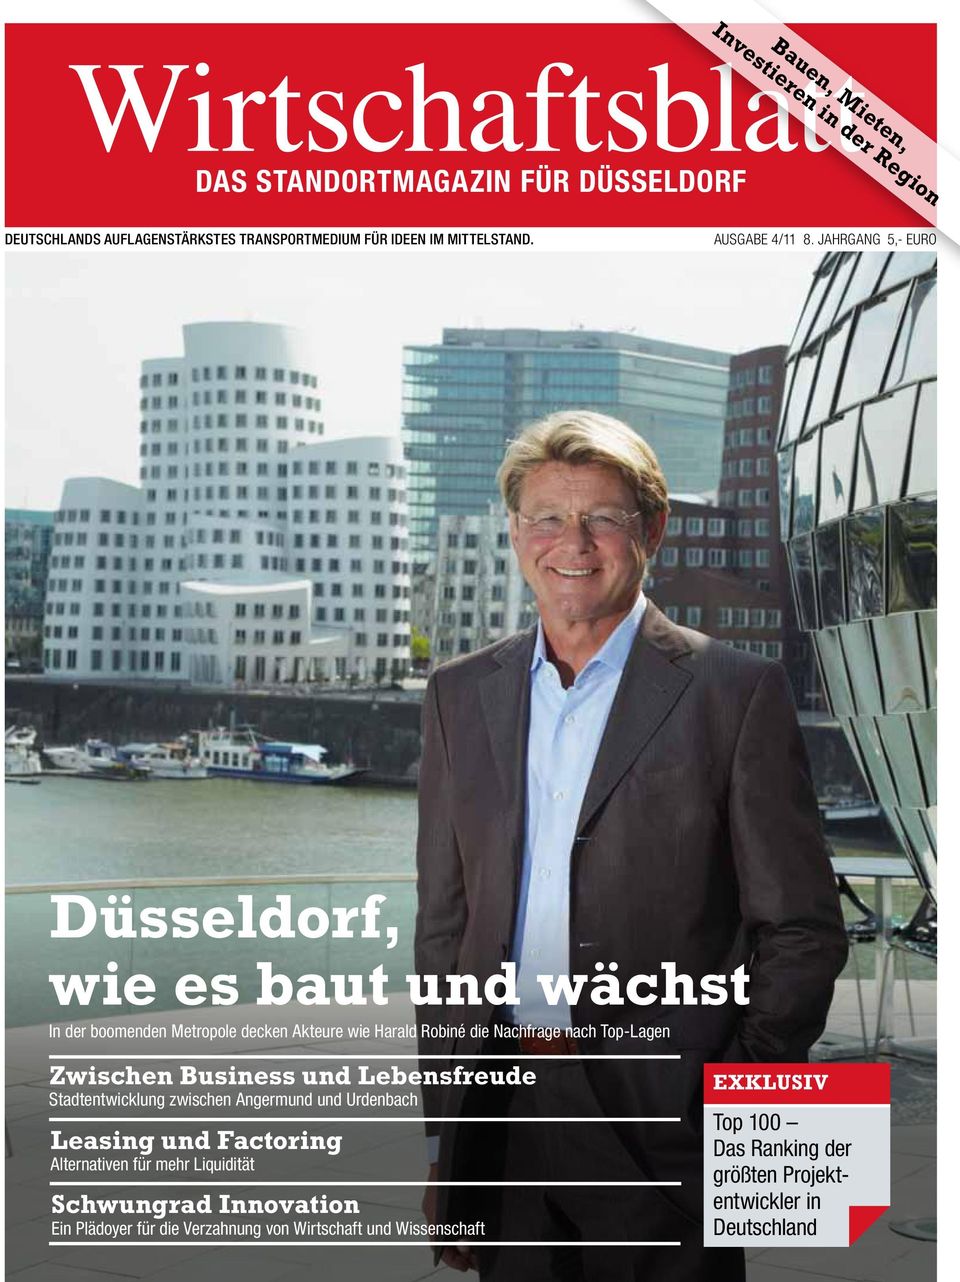 Jahrgang 5,- EURO Düsseldorf, wie es baut und wächst In der boomenden Metropole decken Akteure wie Harald Robiné die Nachfrage nach Top-Lagen Zwischen